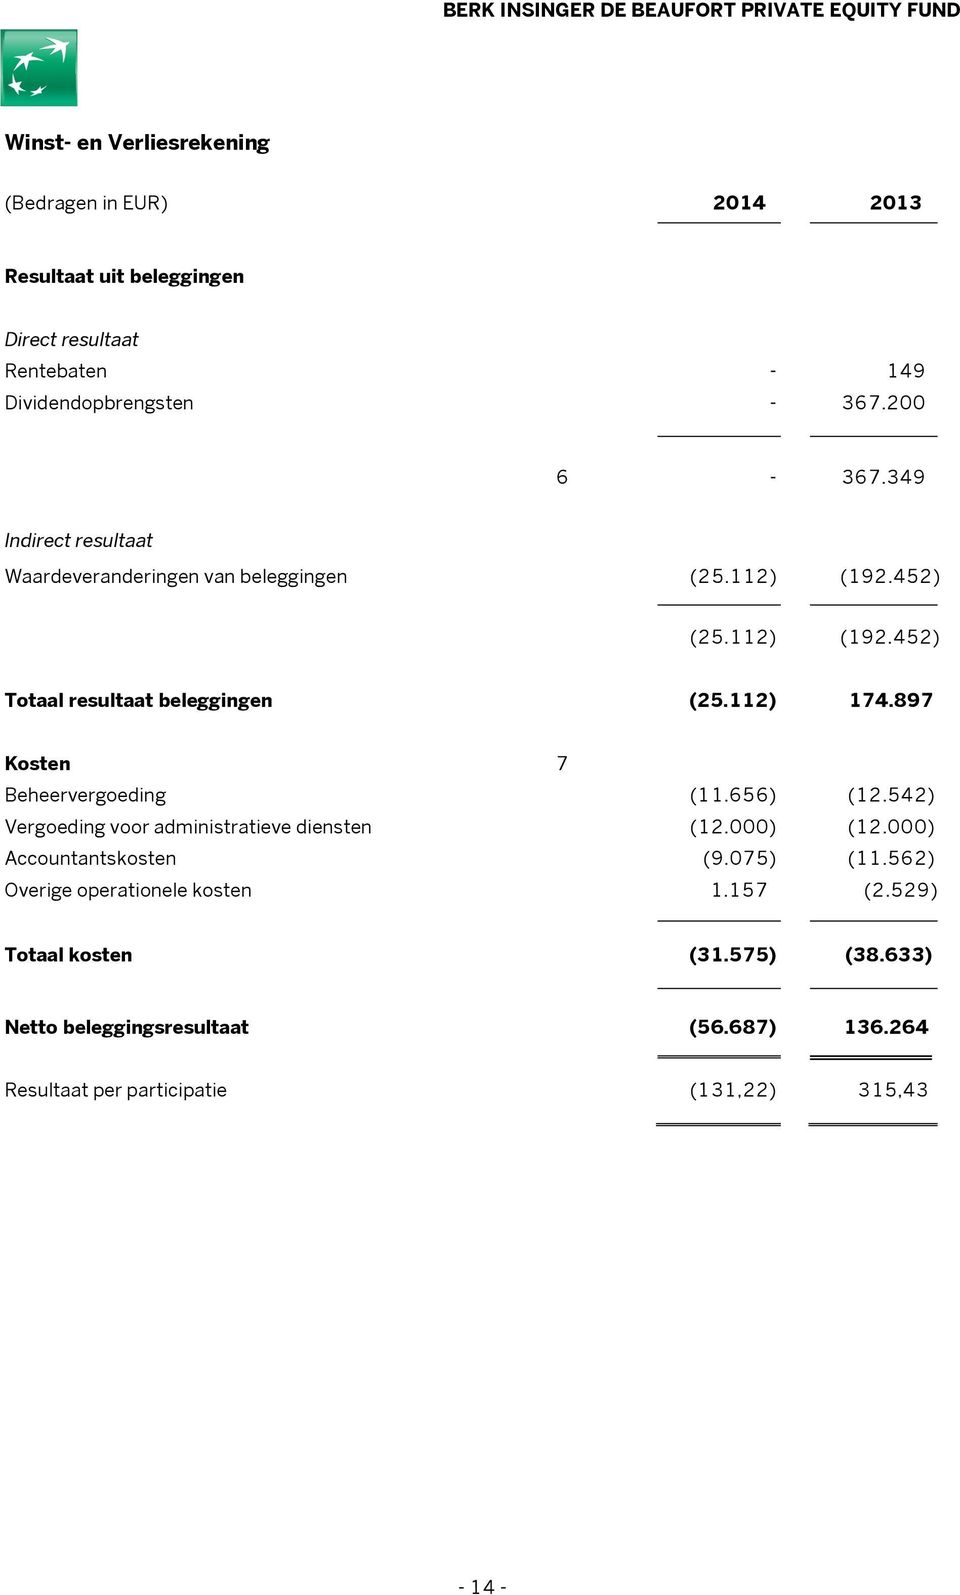 897 Kosten 7 Beheervergoeding (11.656) (12.542) Vergoeding voor administratieve diensten (12.000) (12.000) Accountantskosten (9.075) (11.